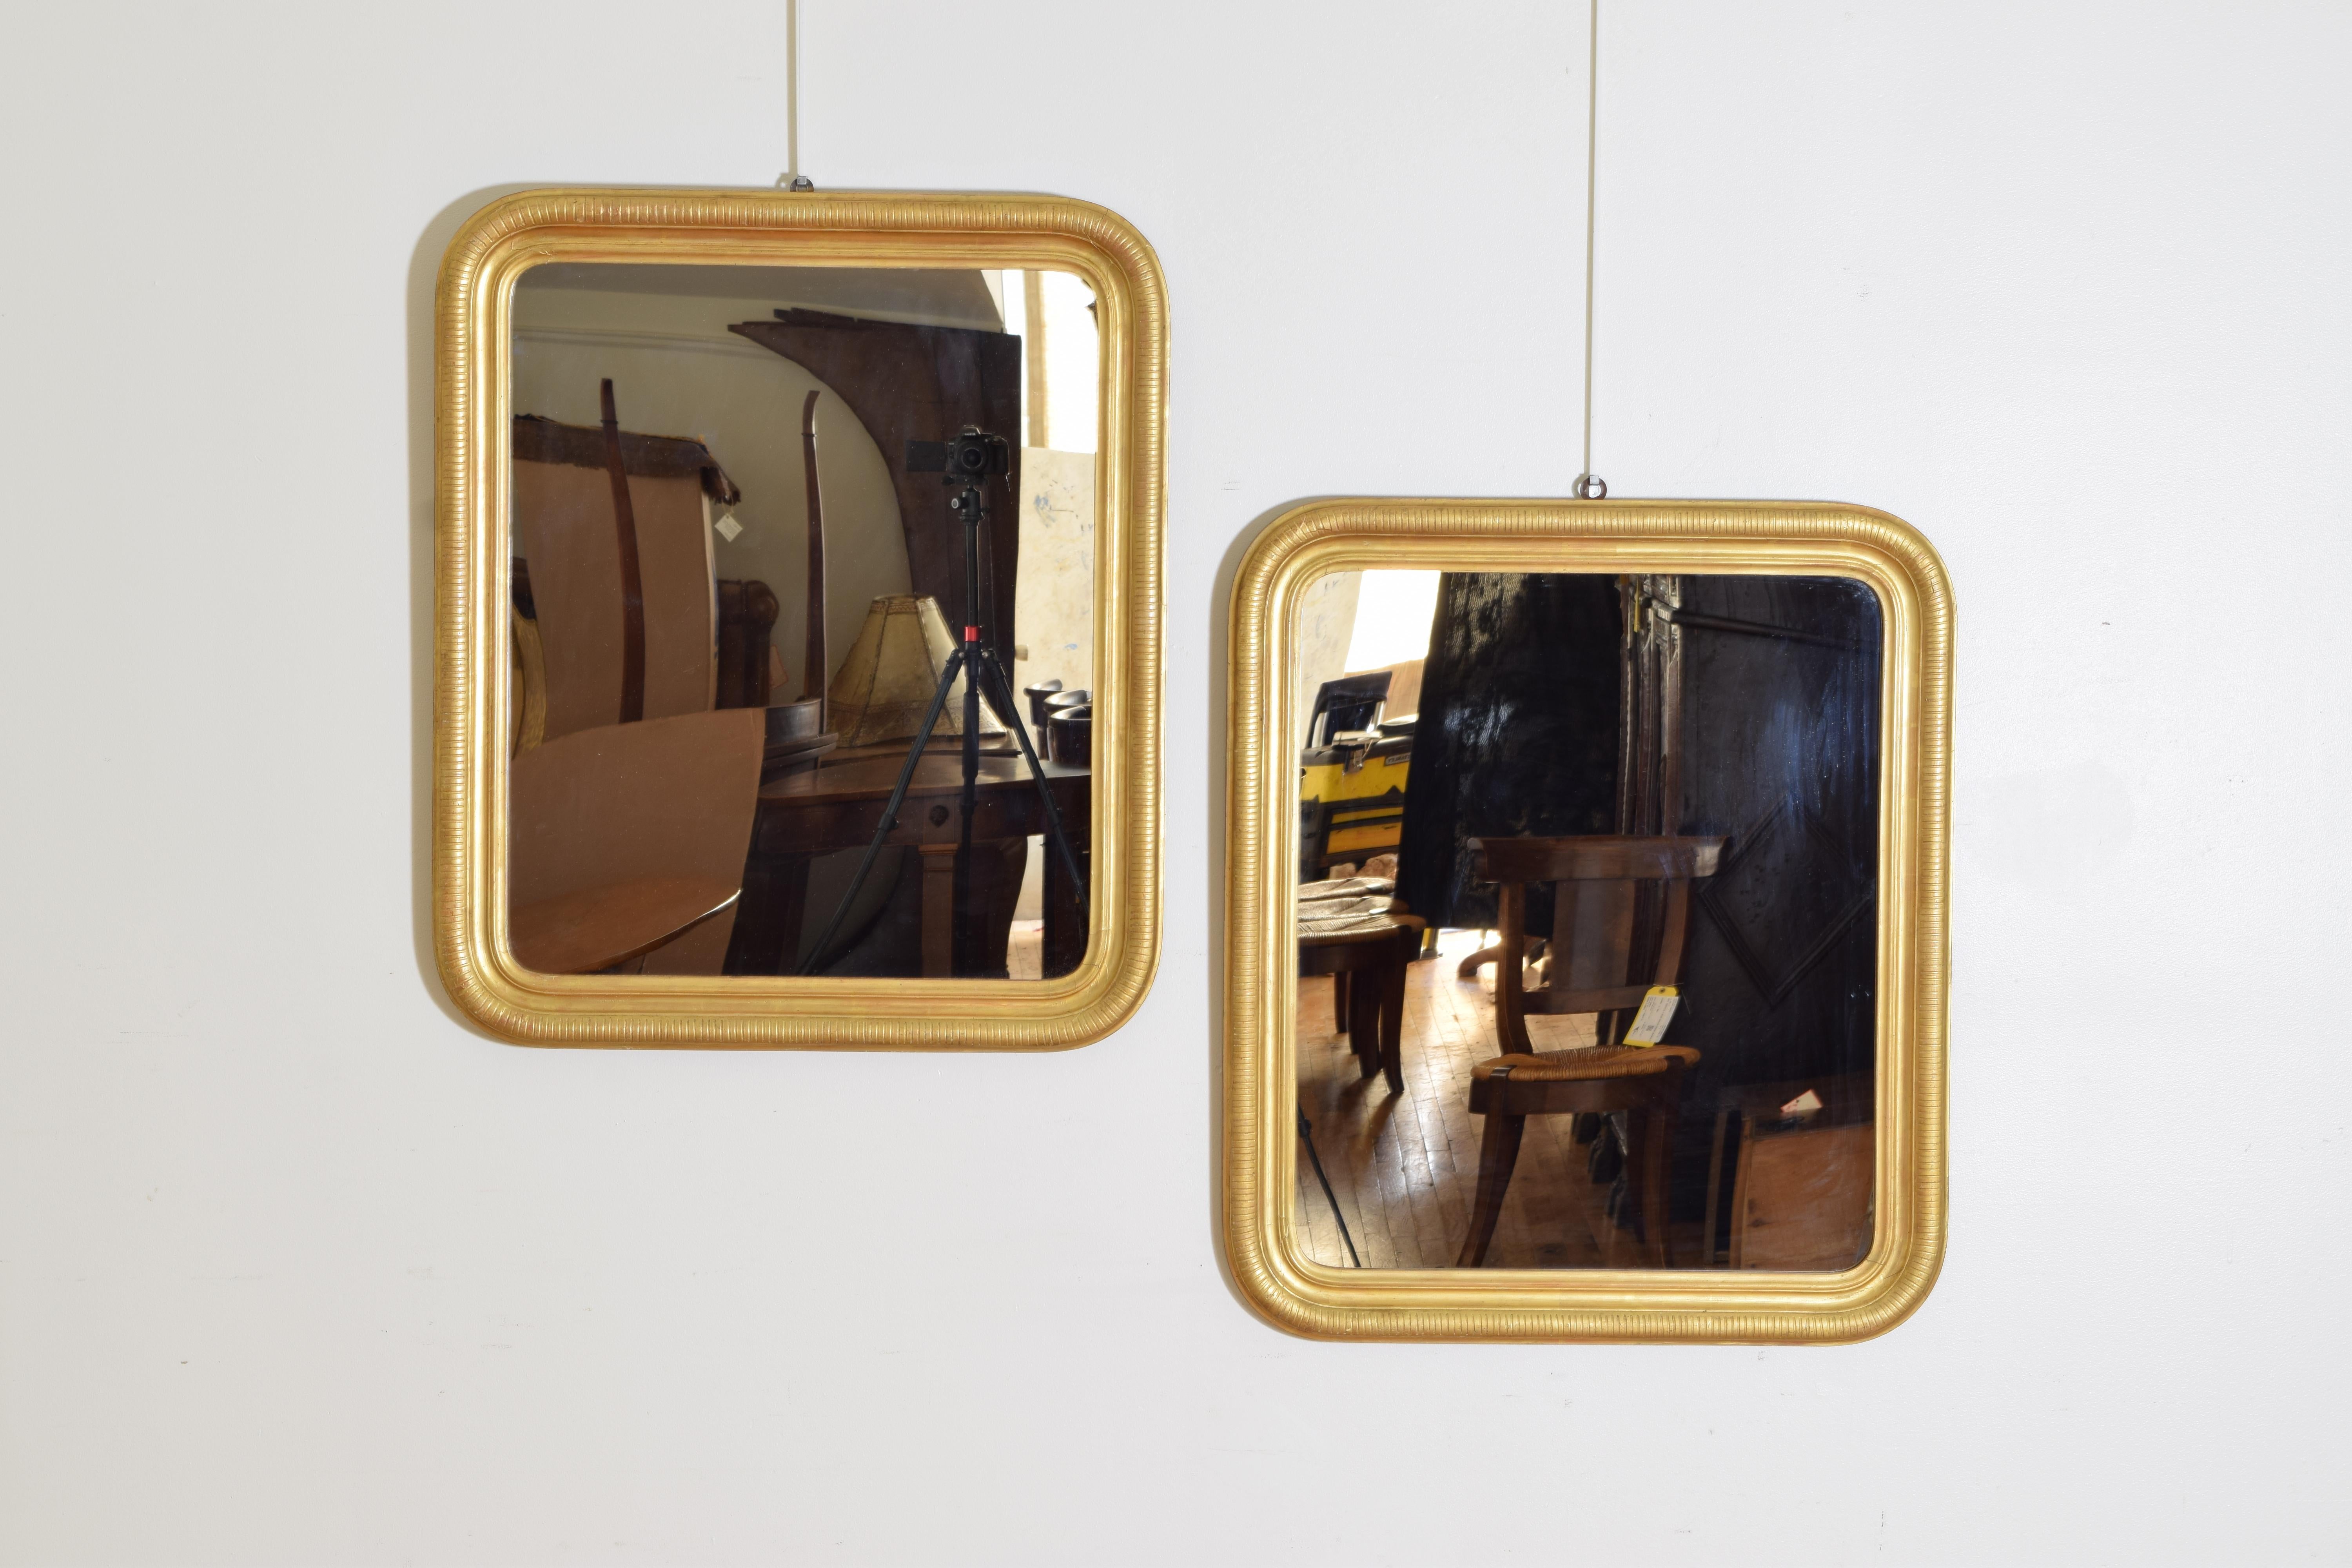 Jeder Spiegel hat eine rechteckige Form mit abgerundeten Kanten, die Rahmen bestehen aus einer Reihe von Leisten, der äußerste mit eingeschnittenen Rippen, die Spiegelplatten sind modern